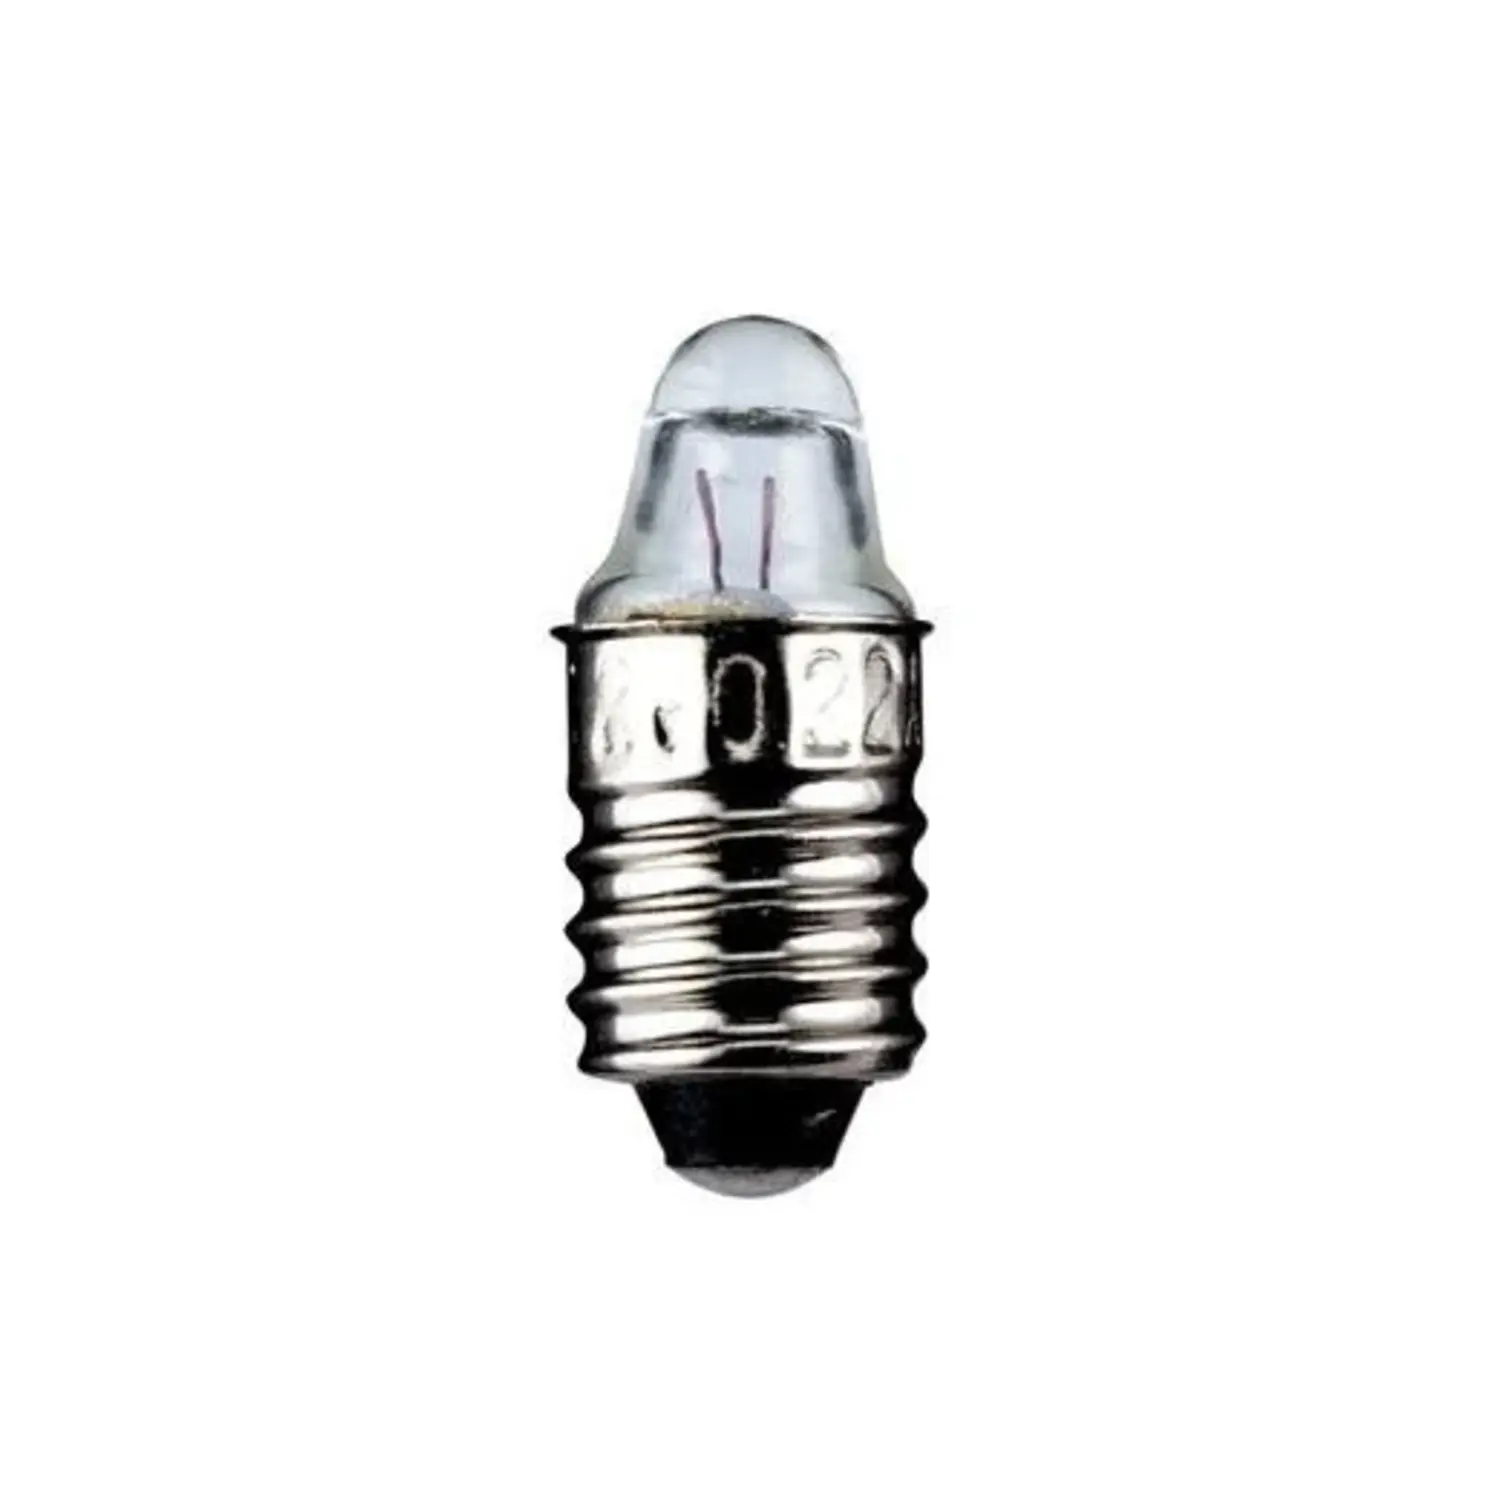 immagine del prodotto lampadina a faretto appuntita miniatura modellismo e10 1,10 watt 3,7 volt